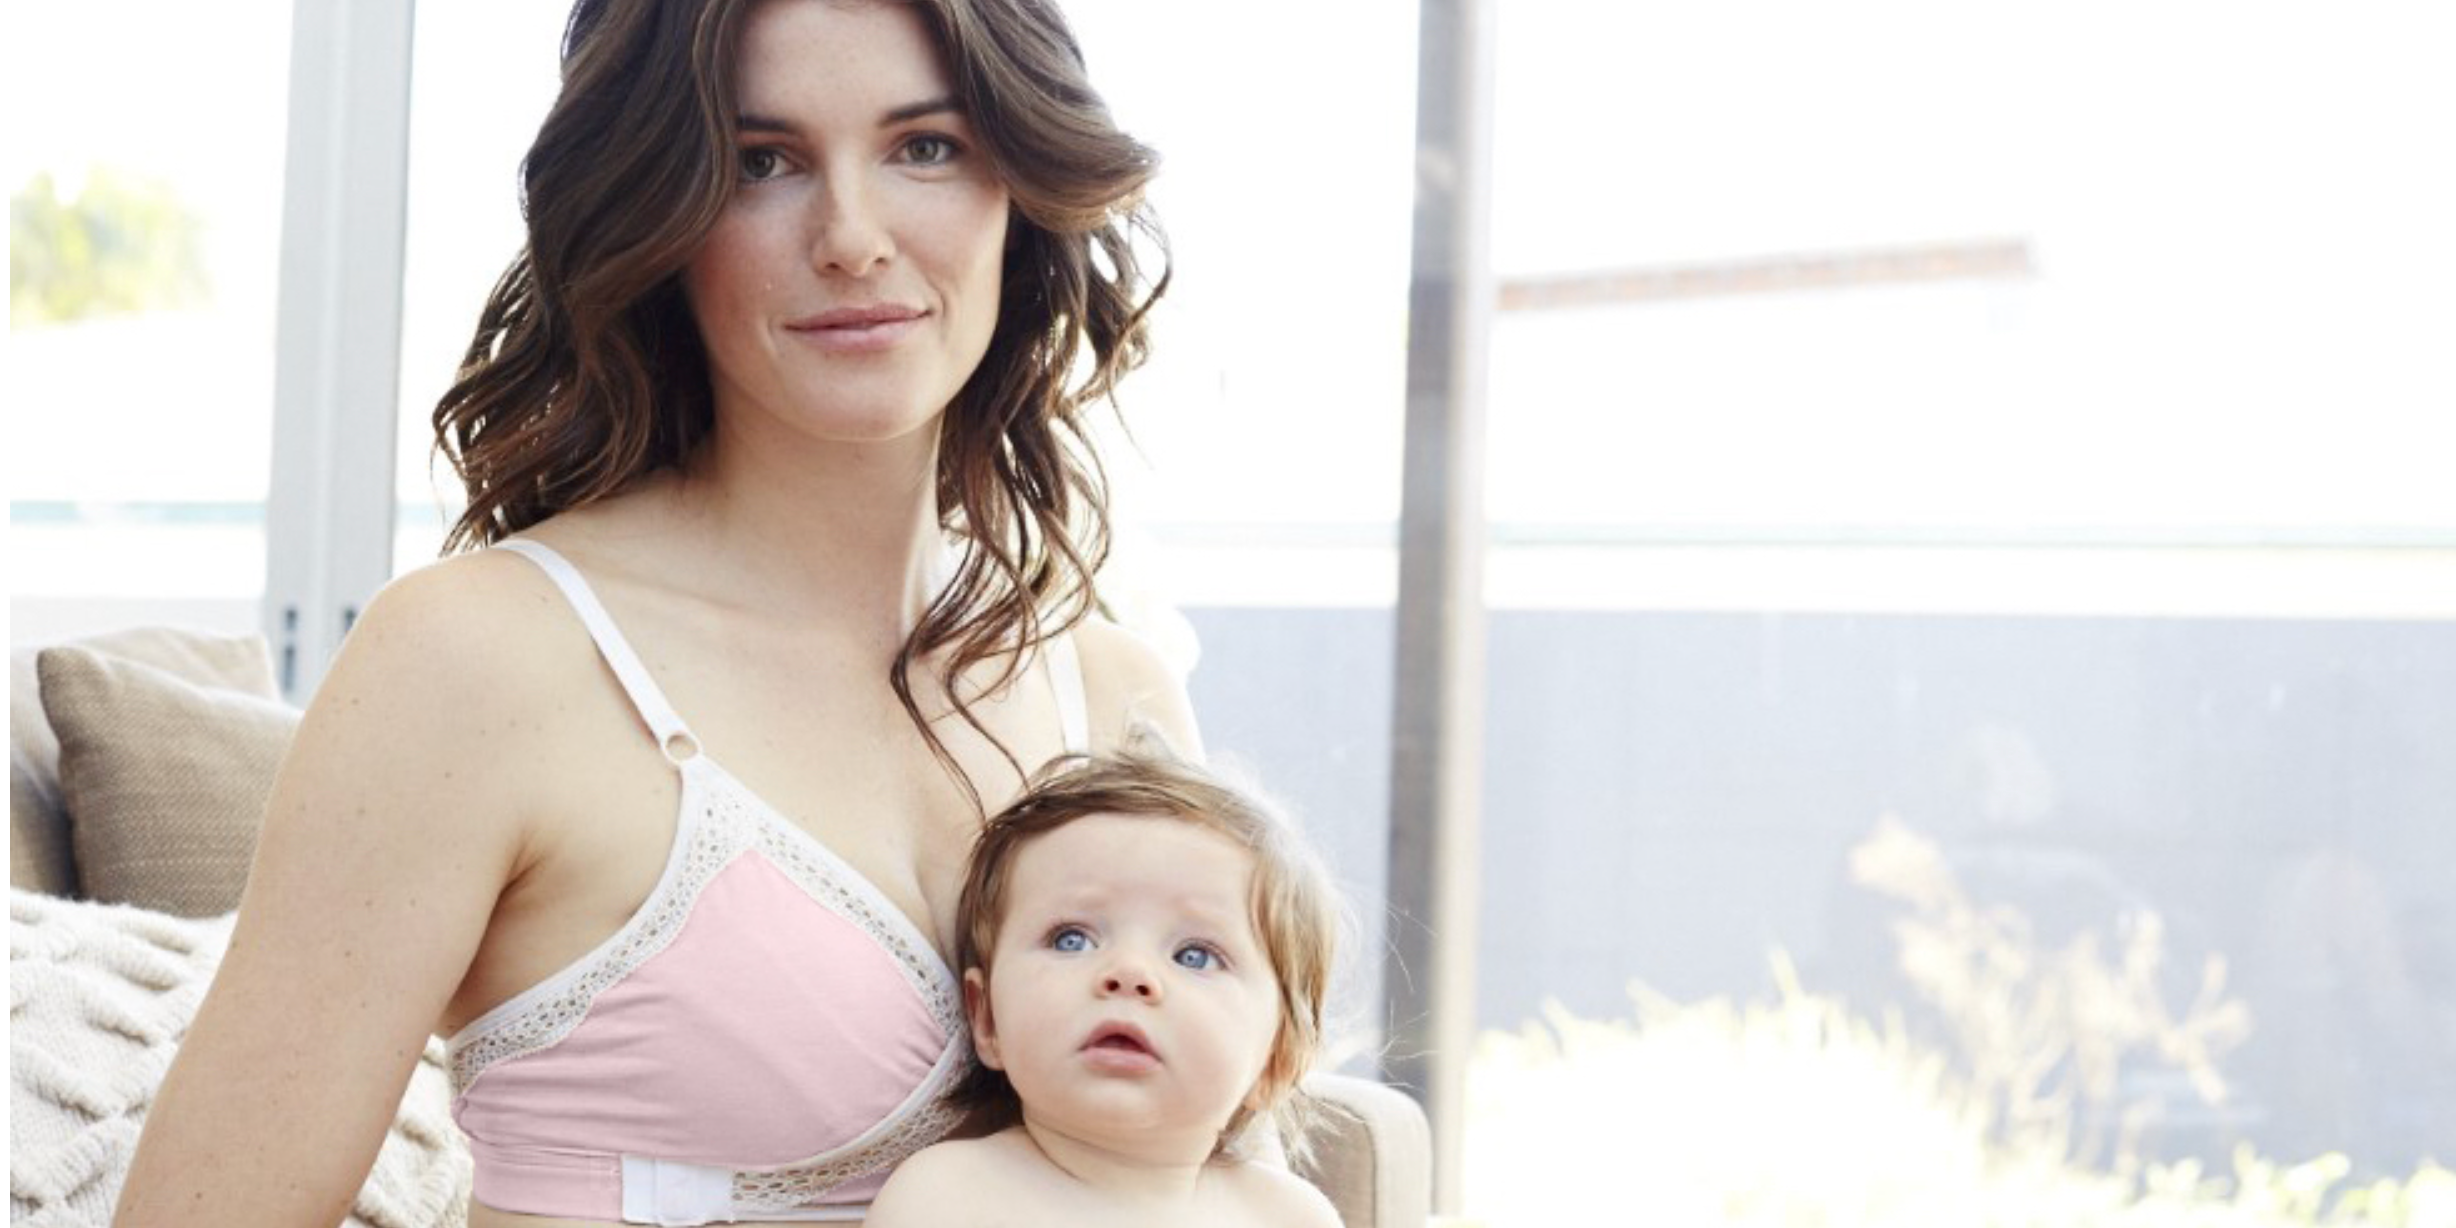 rose blush - mom with baby - pumping bra - rose blush bra - rose pumping bra